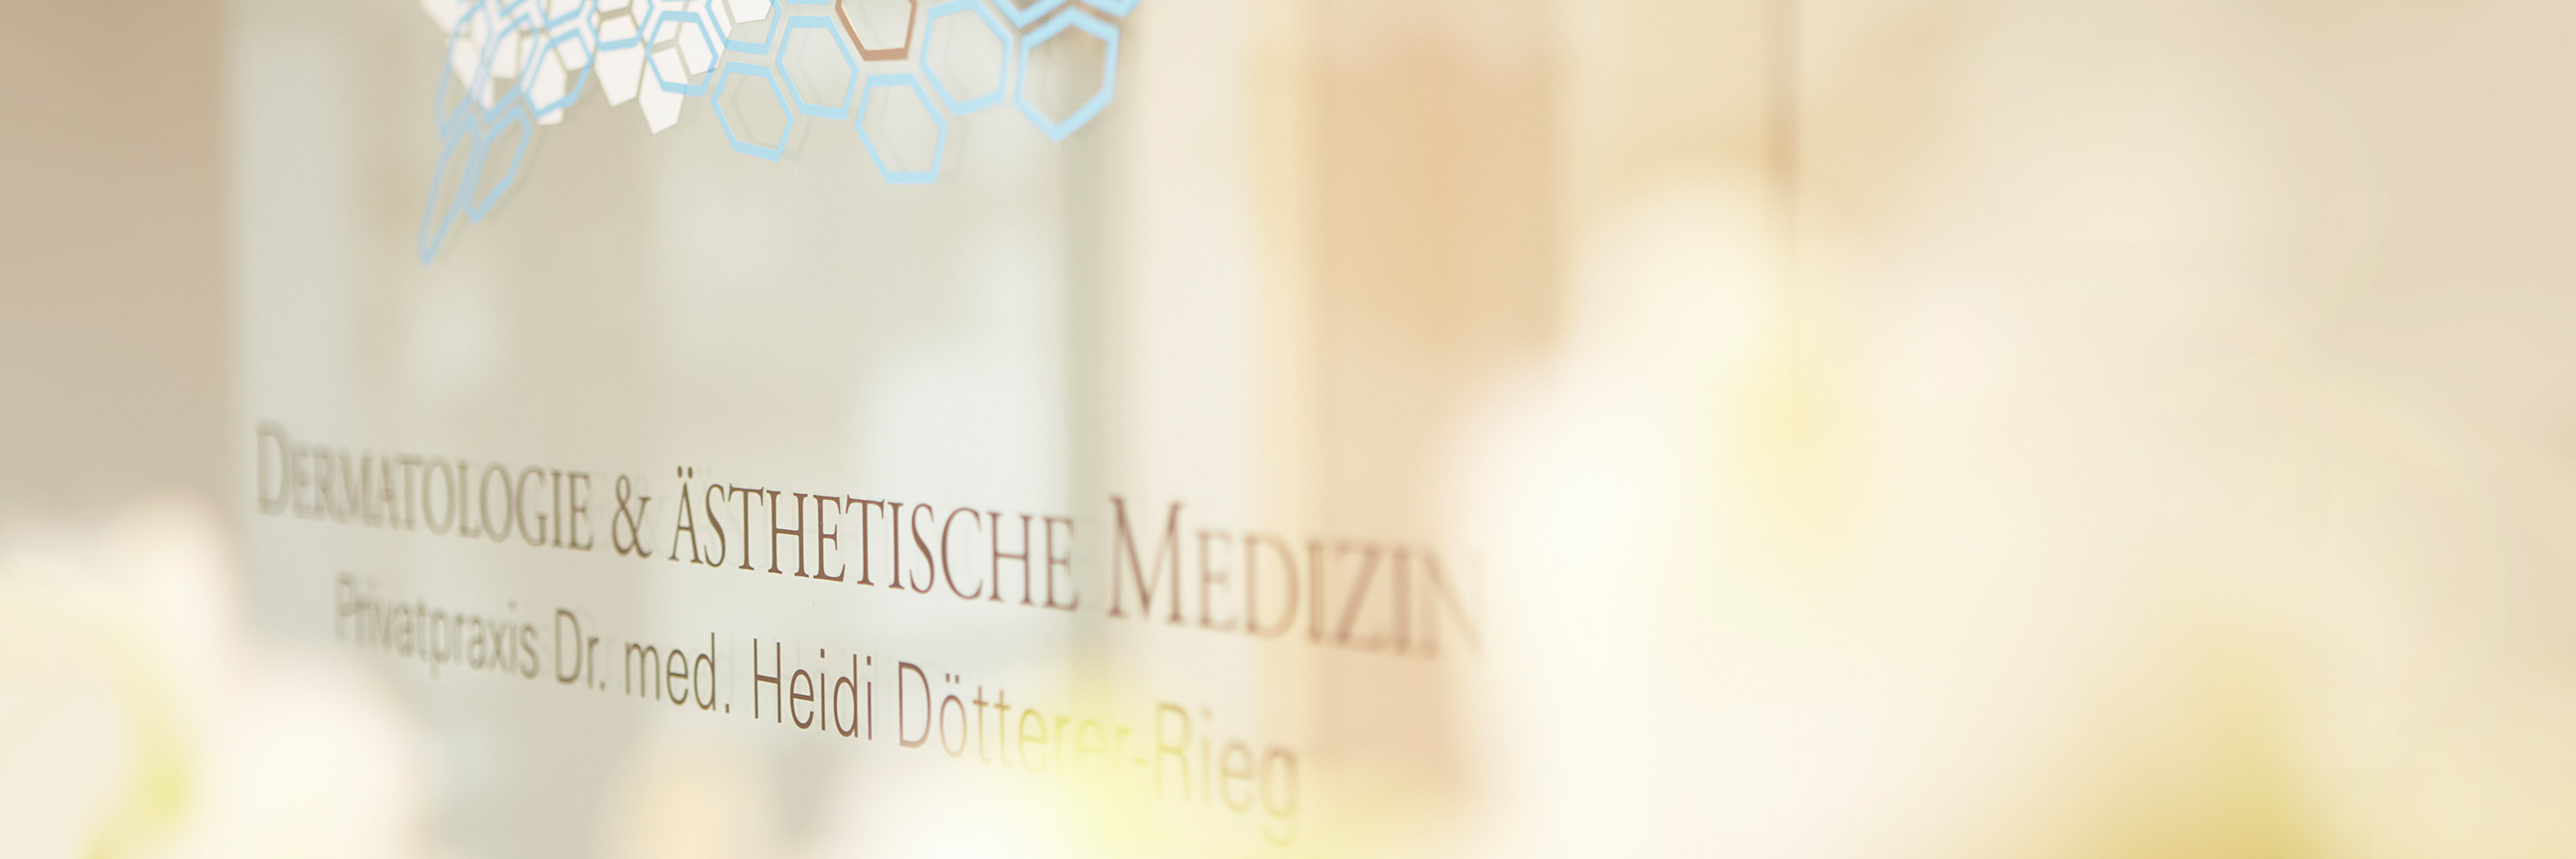 Privatpraxis Dr. med. Heidi Dötterer-Rieg & Kollegen für Dermatologie und Ästhetische Medizin ist auf einer Glastür angebracht. Im Vordergrund sind verschwommen frische weiße Orchideen zu sehen - Frankfurter Hautarztpraxis heißt Sie willkommen!